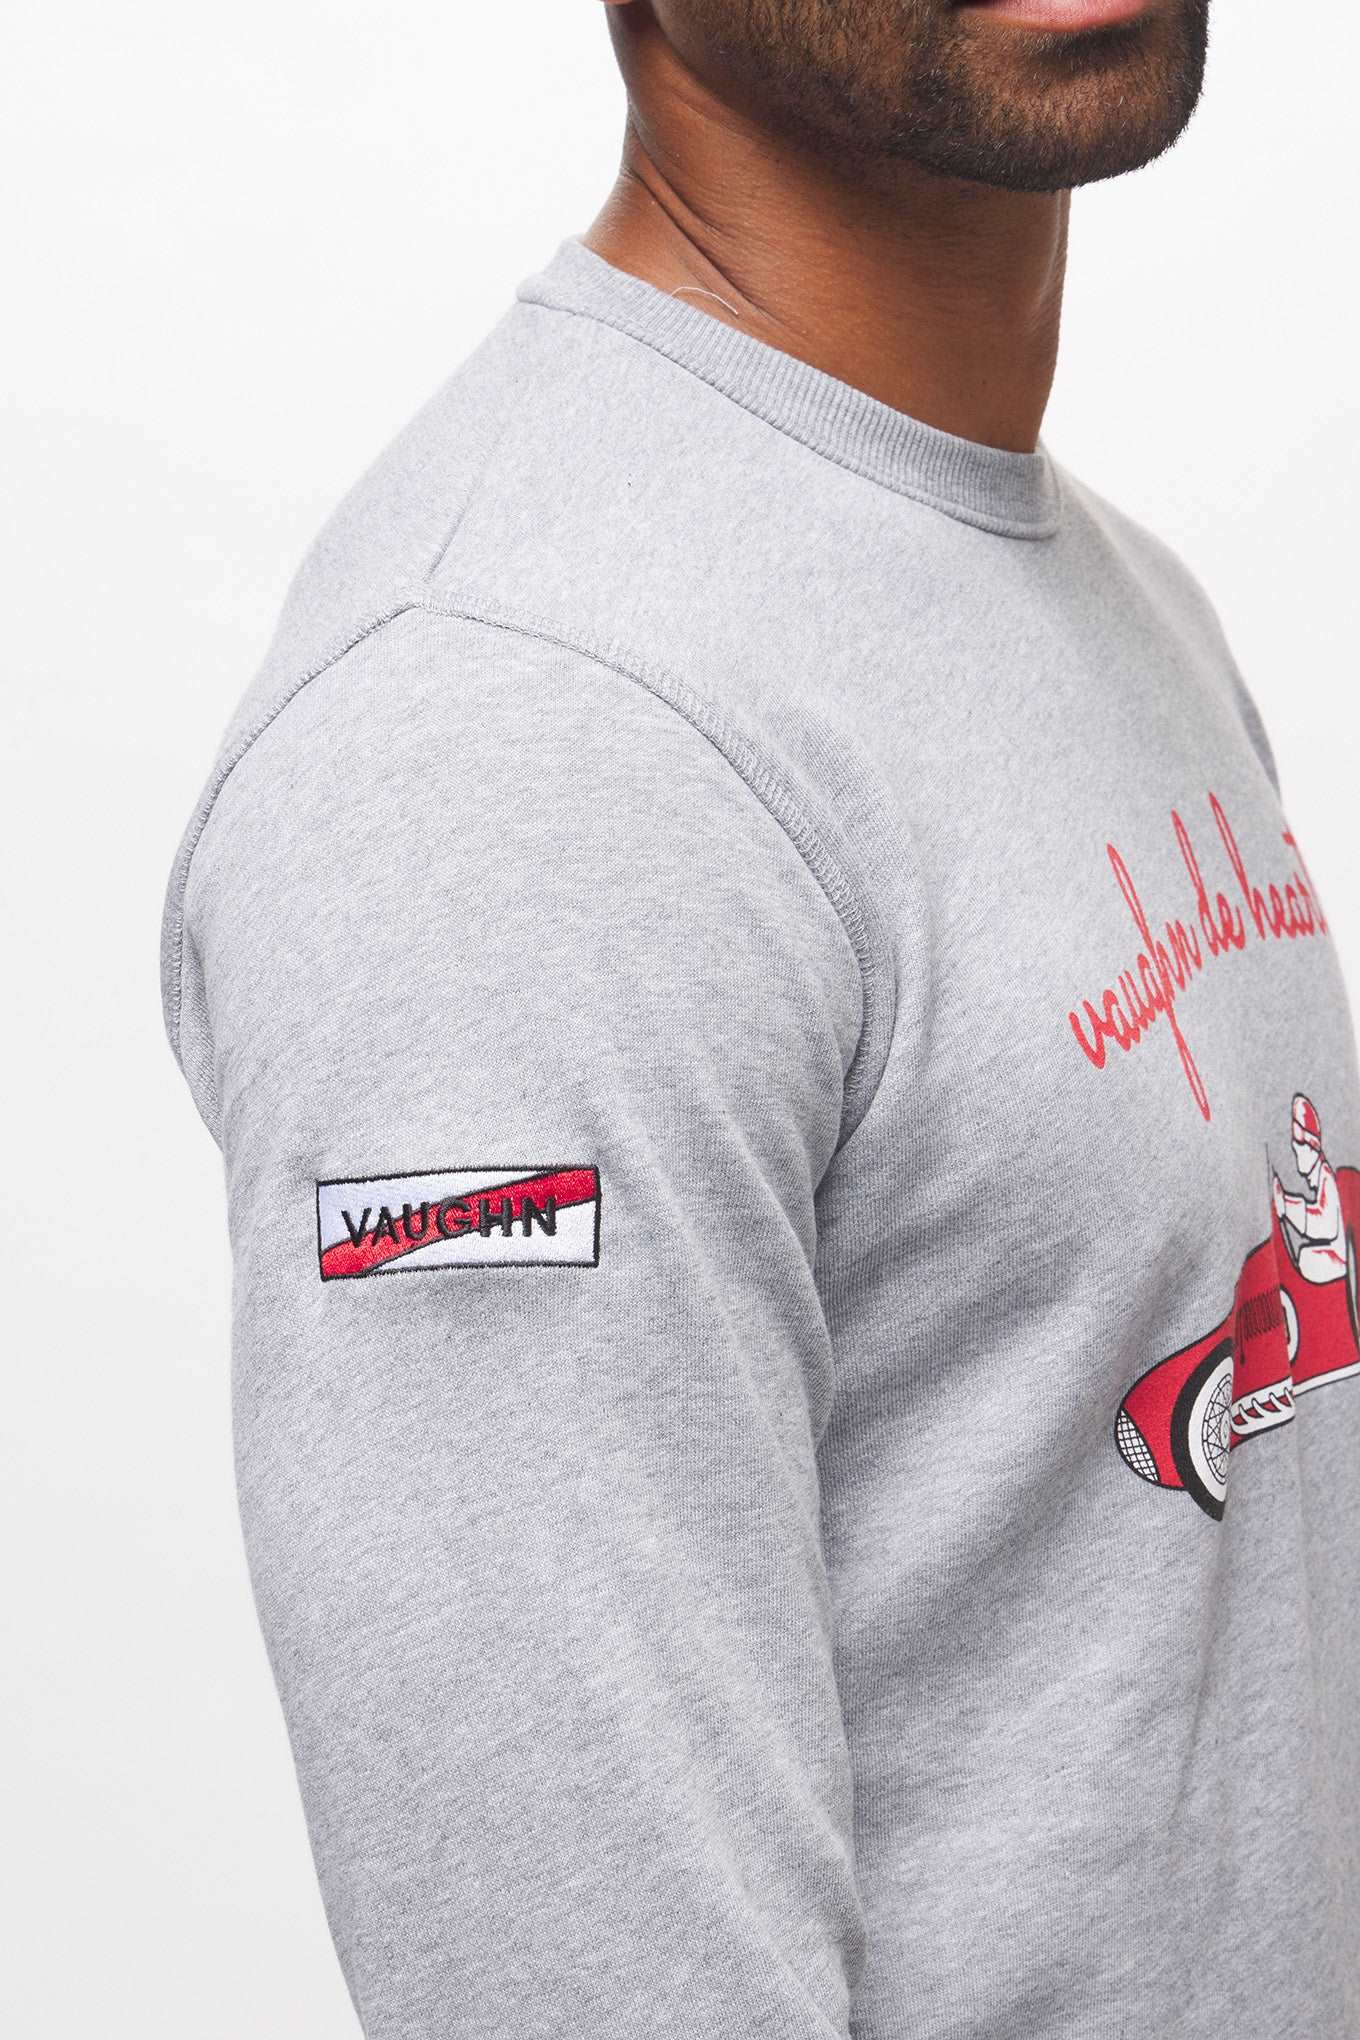 F1 Sweatshirt - Uno Zero Automobilismo Vaughn de Heart